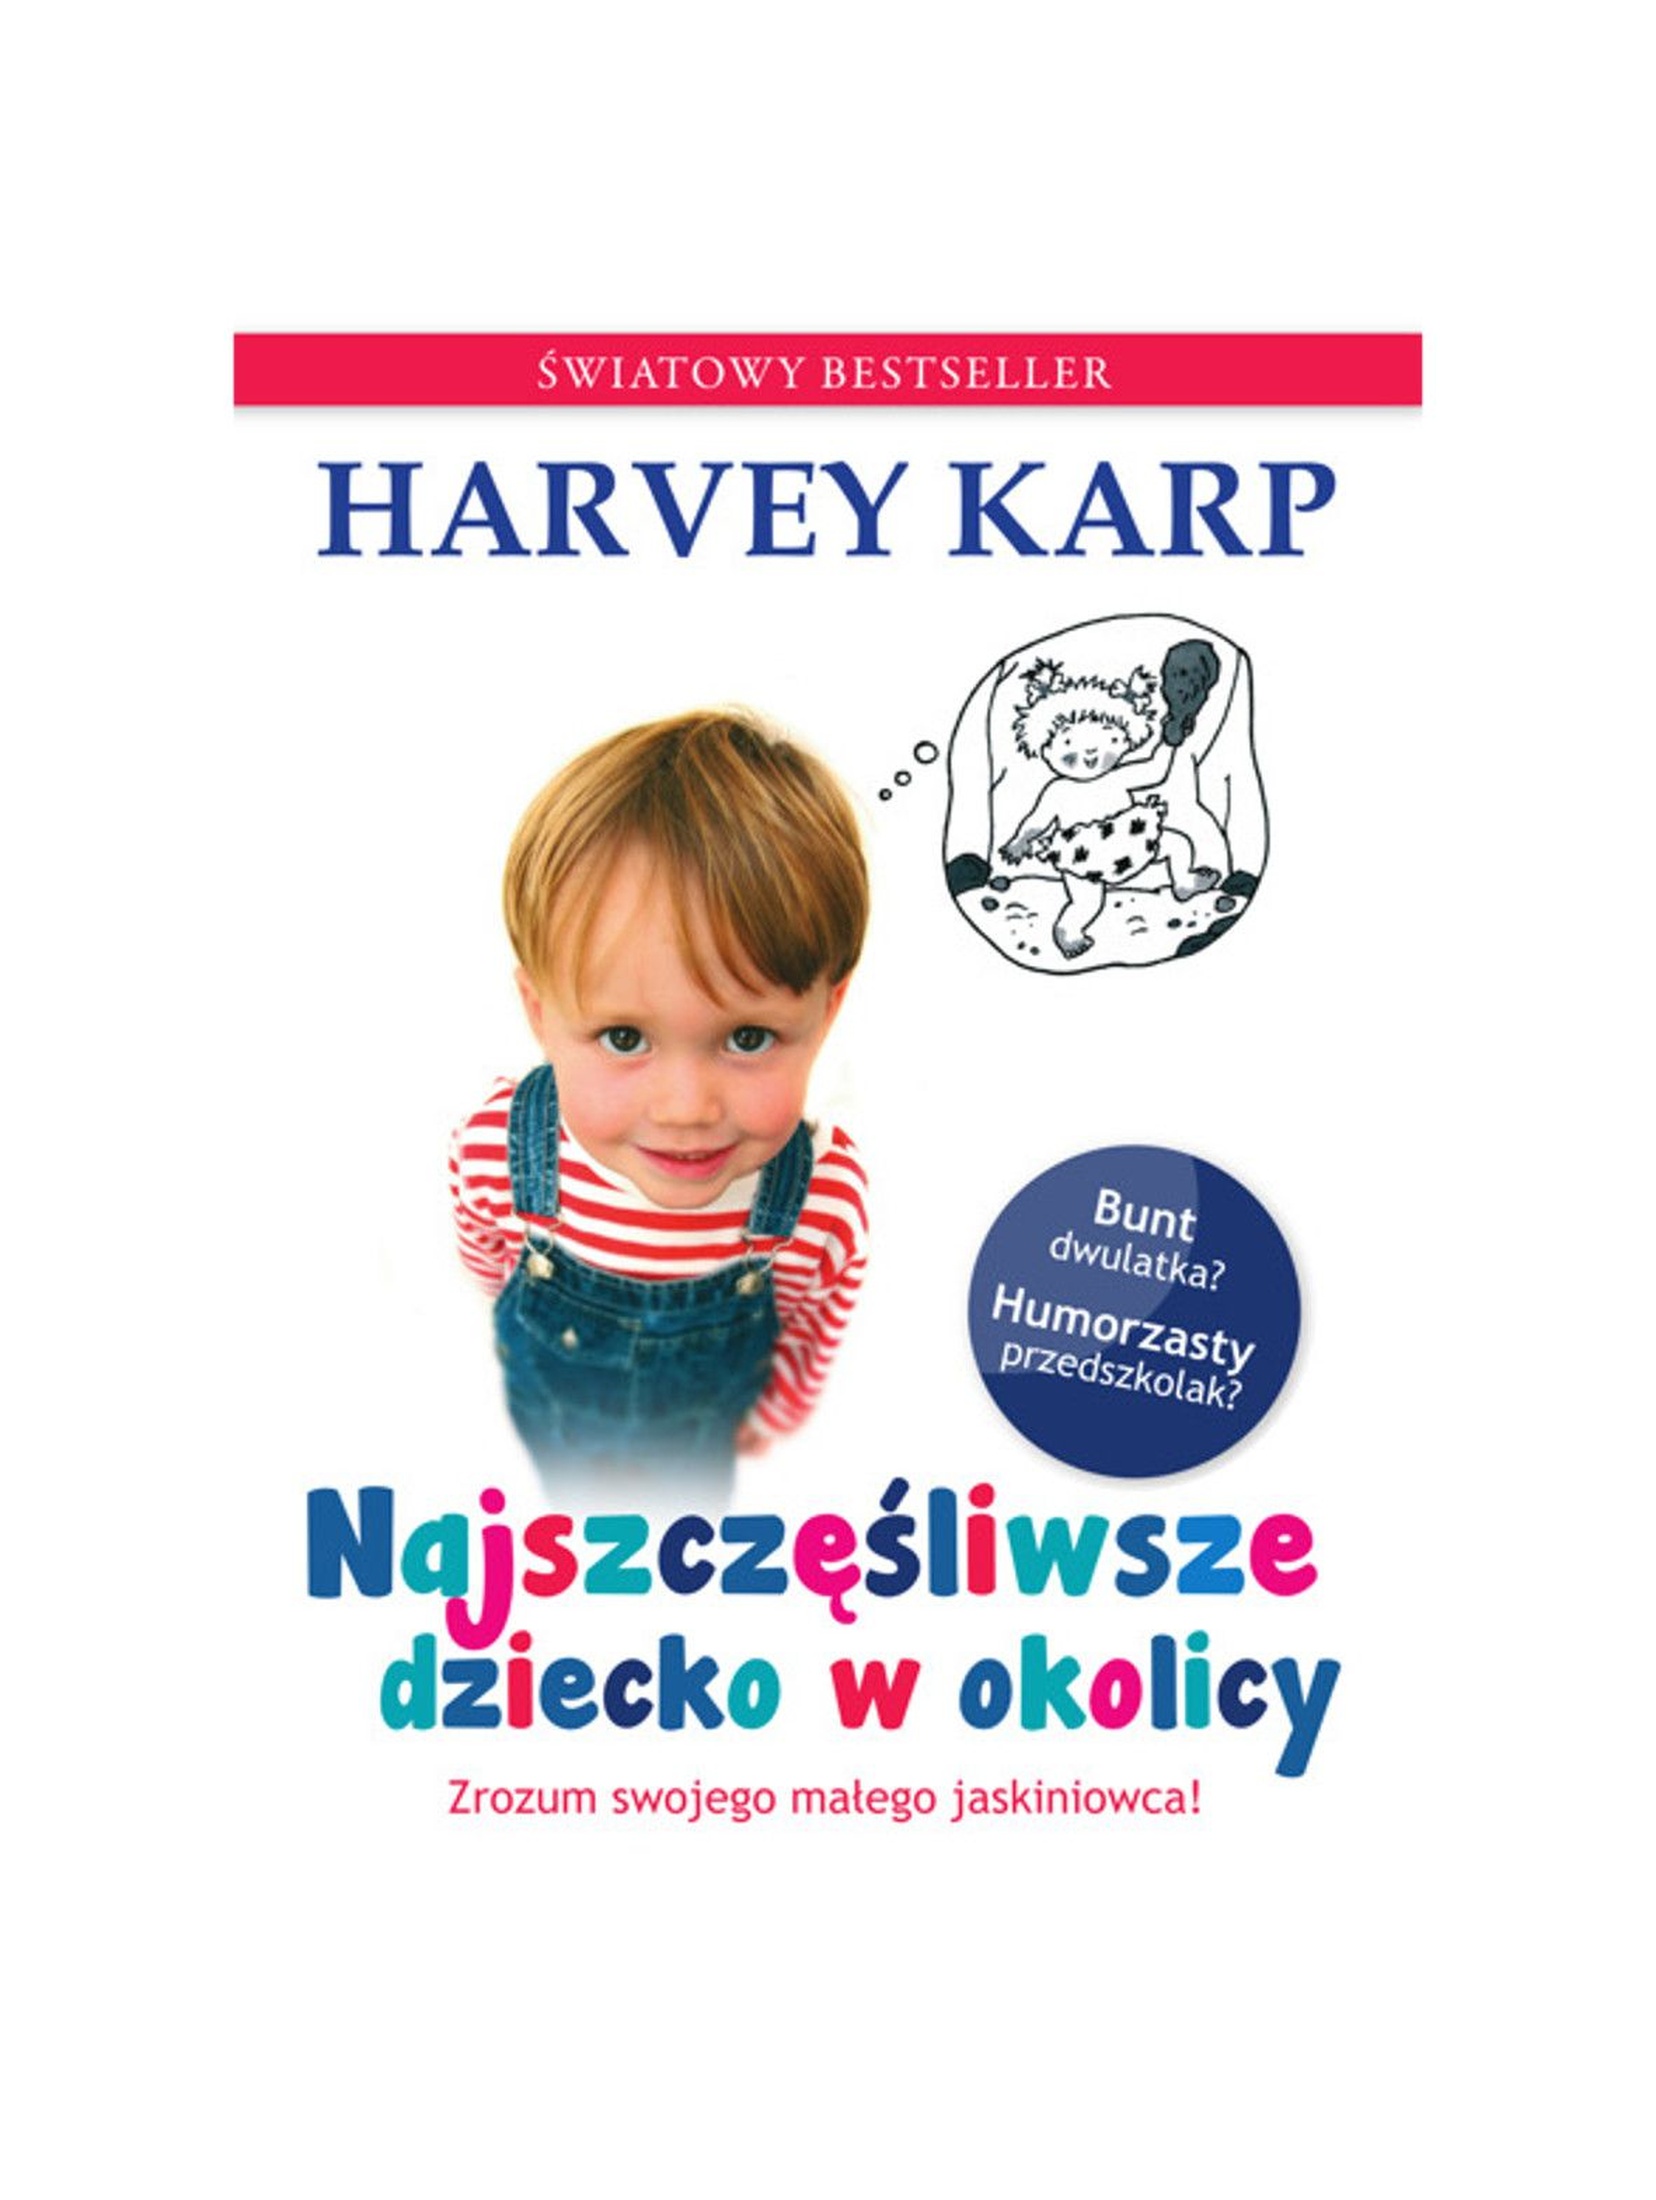 Książka "Najszczęśliwsze dziecko w okolicy"- H.Karp poradnik dla rodziców